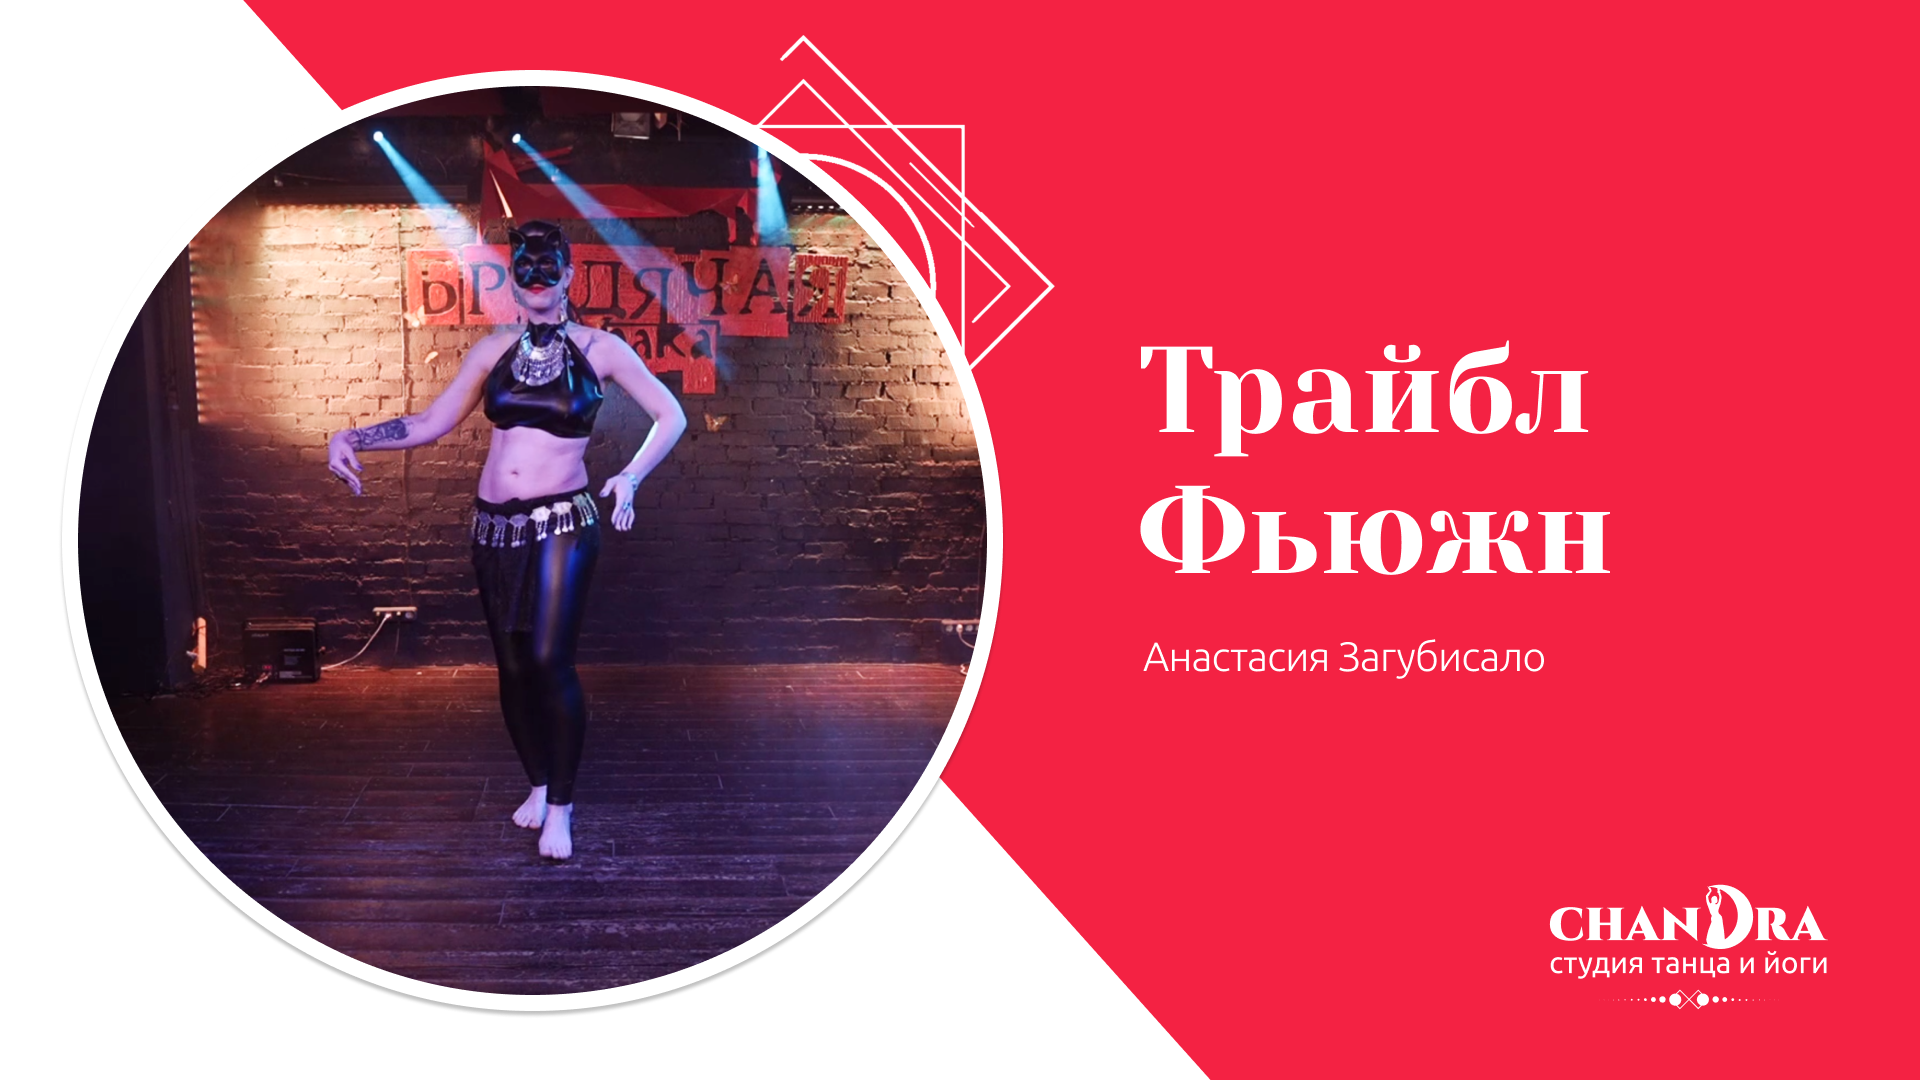 Студия танца и йоги в Новосибирске Chandra. Отчетный концерт '24: Tribal Fusion Анастасия Загубисало